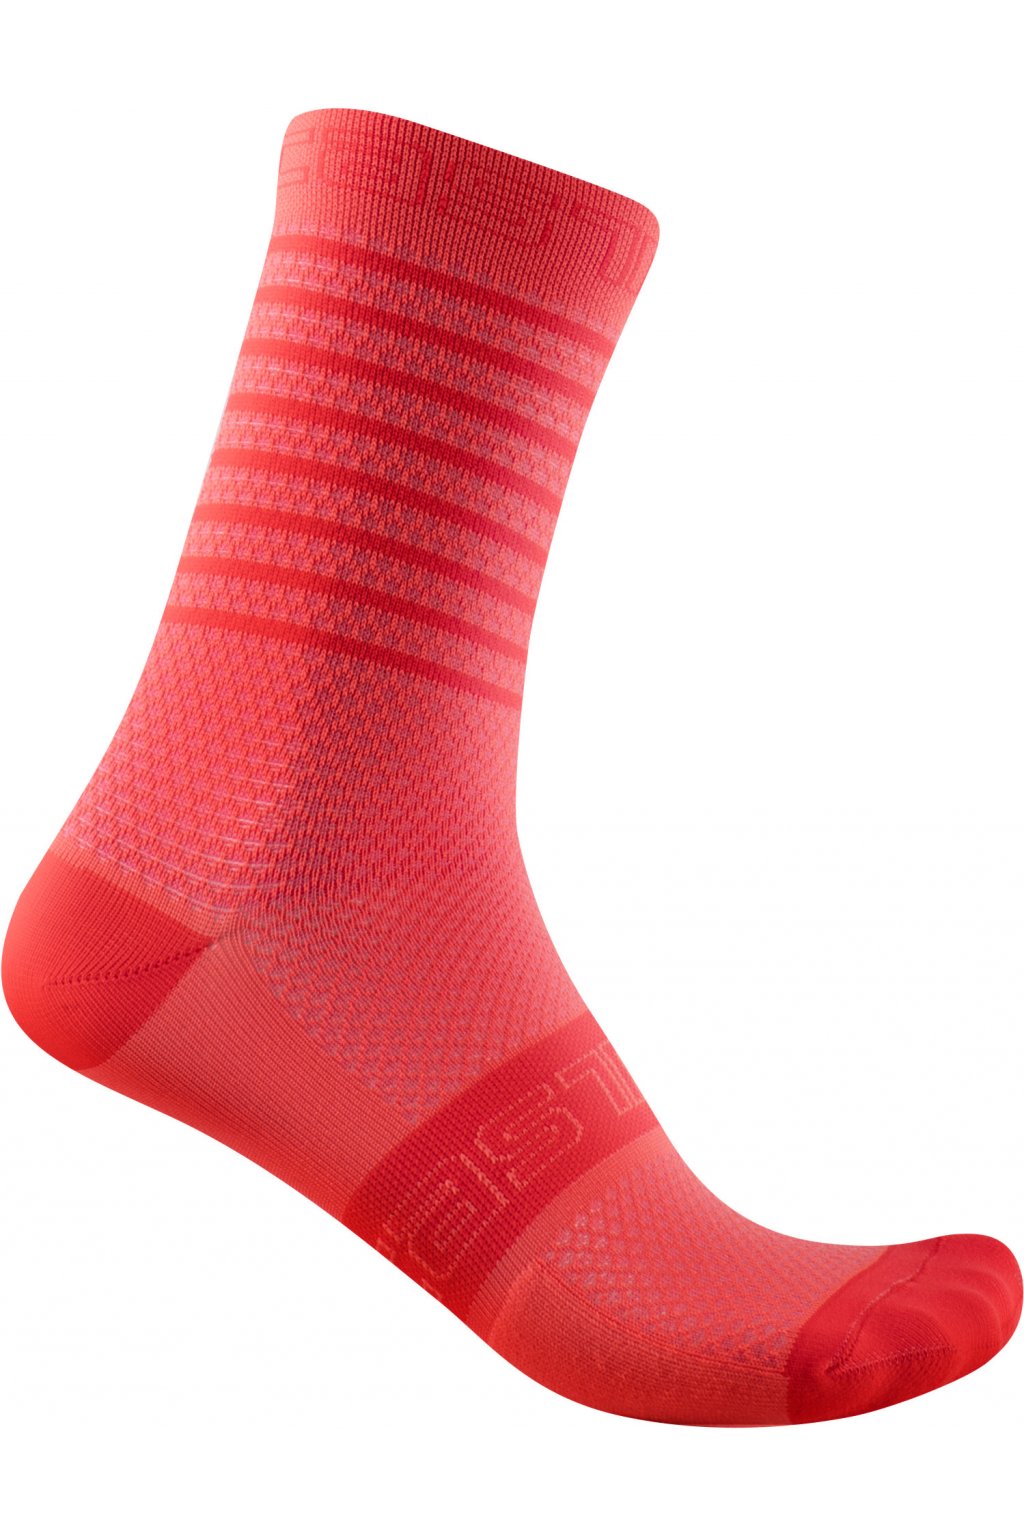 Dámské cyklistické ponožky CASTELLI Superleggera 12, brilliant pink